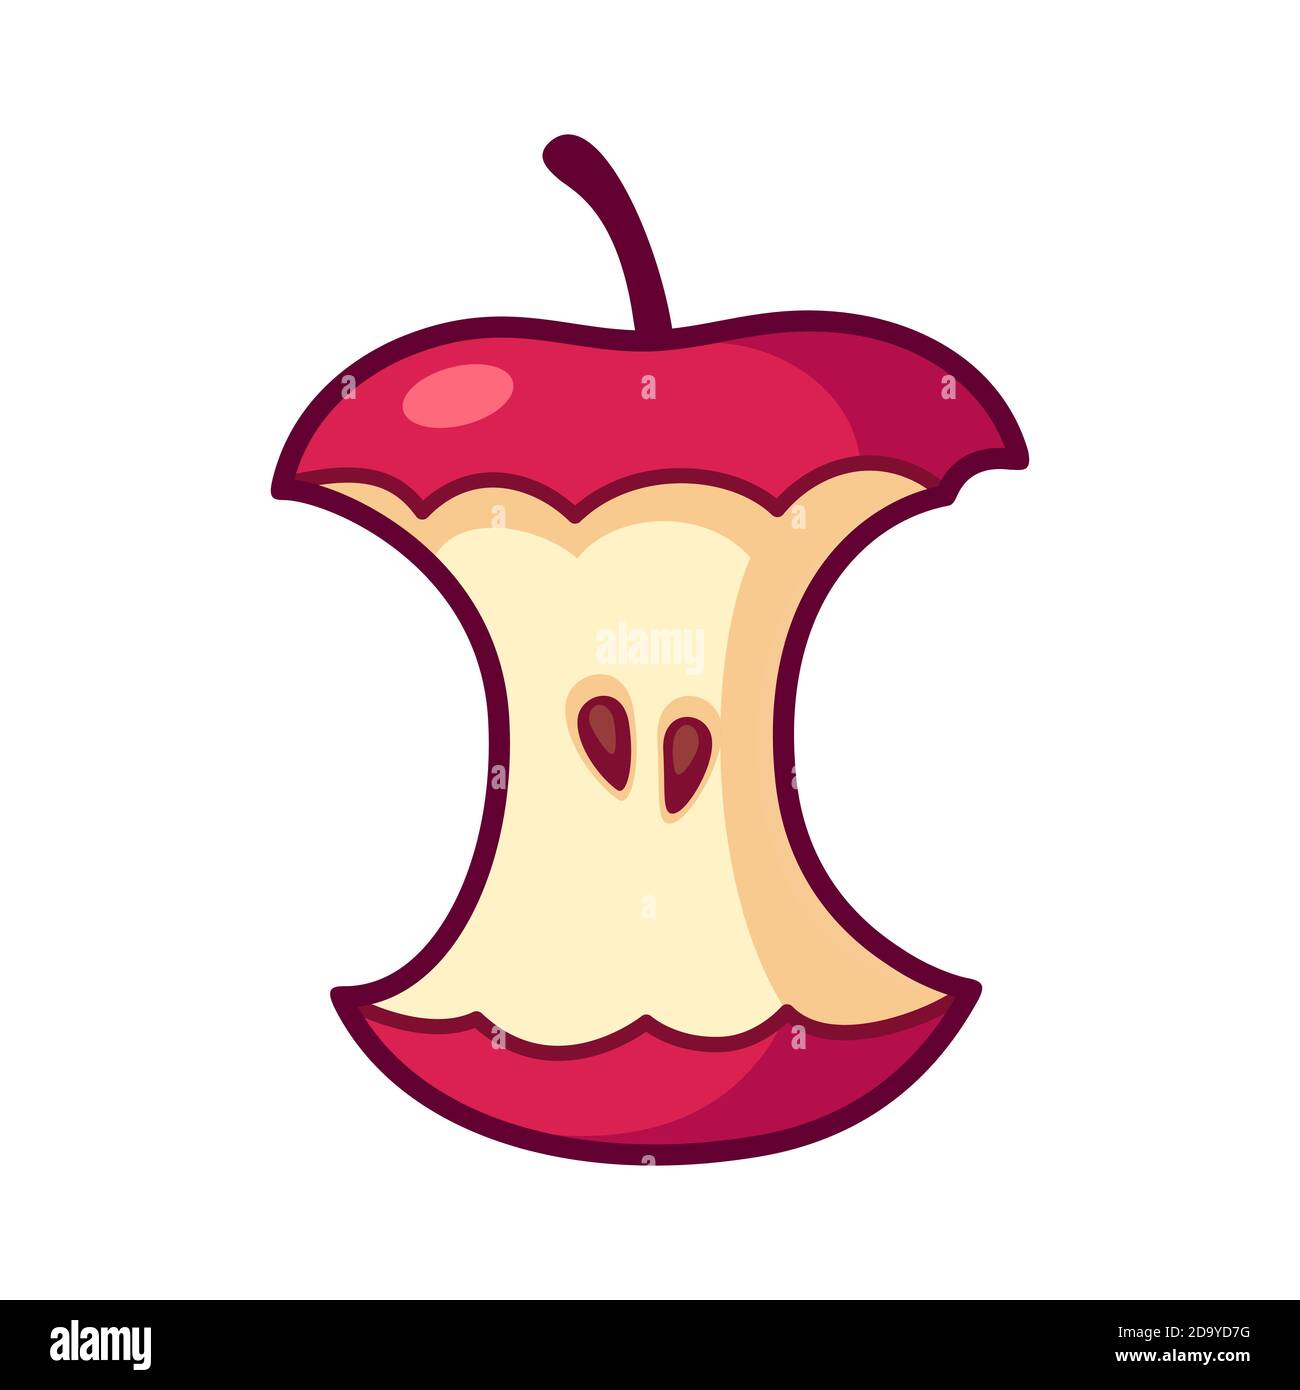 Disegno del nucleo di mela del cartone animato. Semplice immagine vettoriale con grumi di mela rossi e clip art isolati. Illustrazione Vettoriale